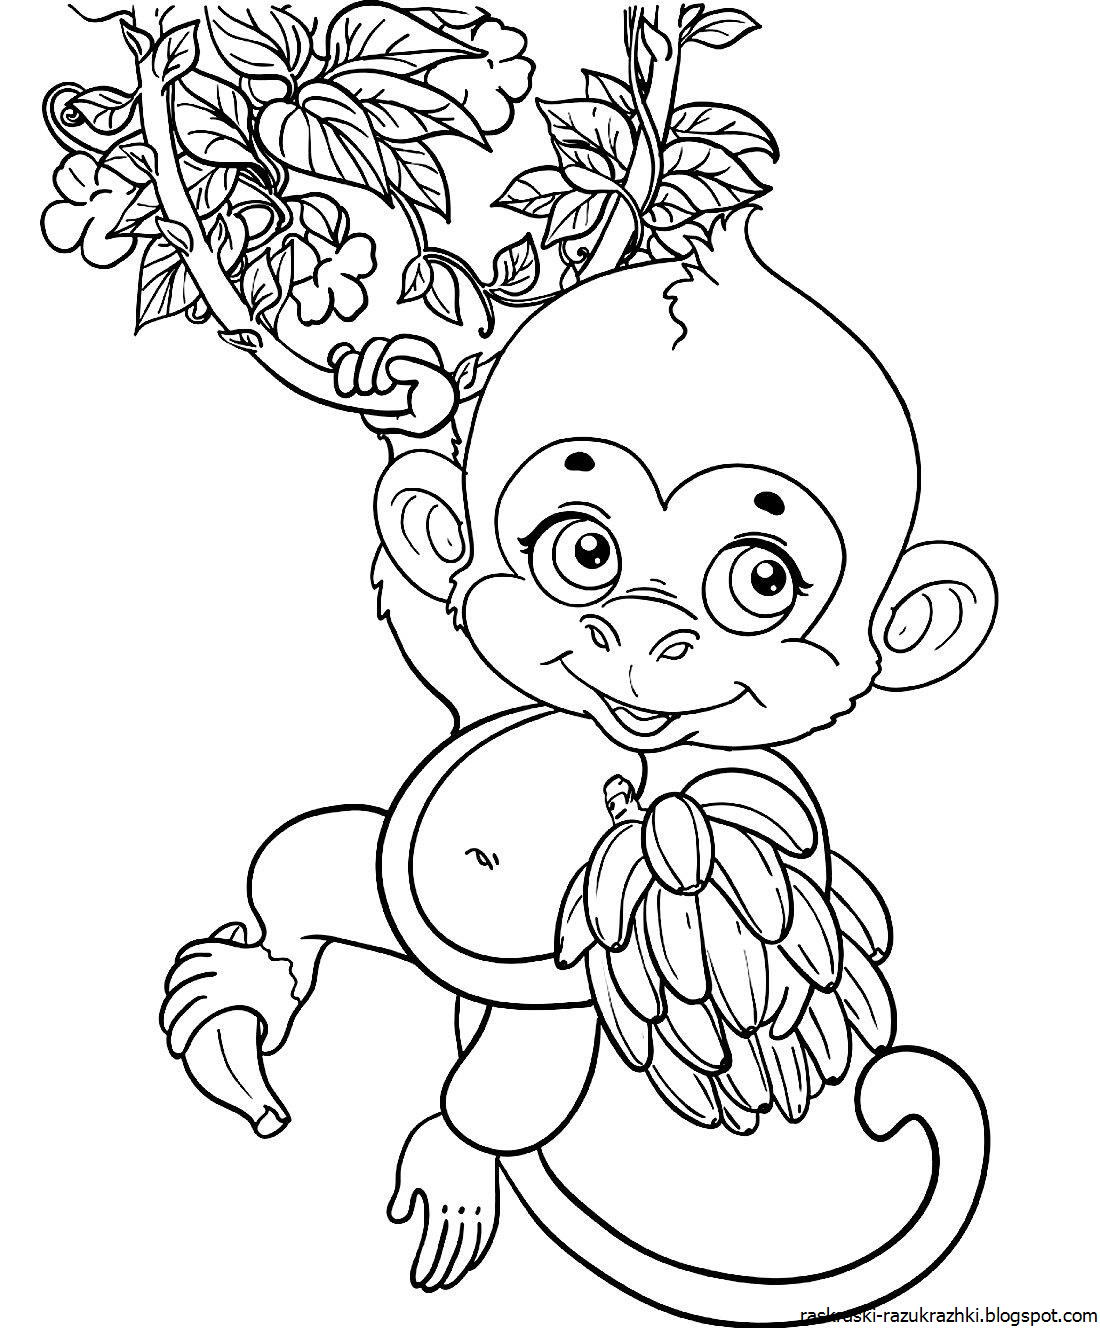 обезьяна с бананом качается на лиане